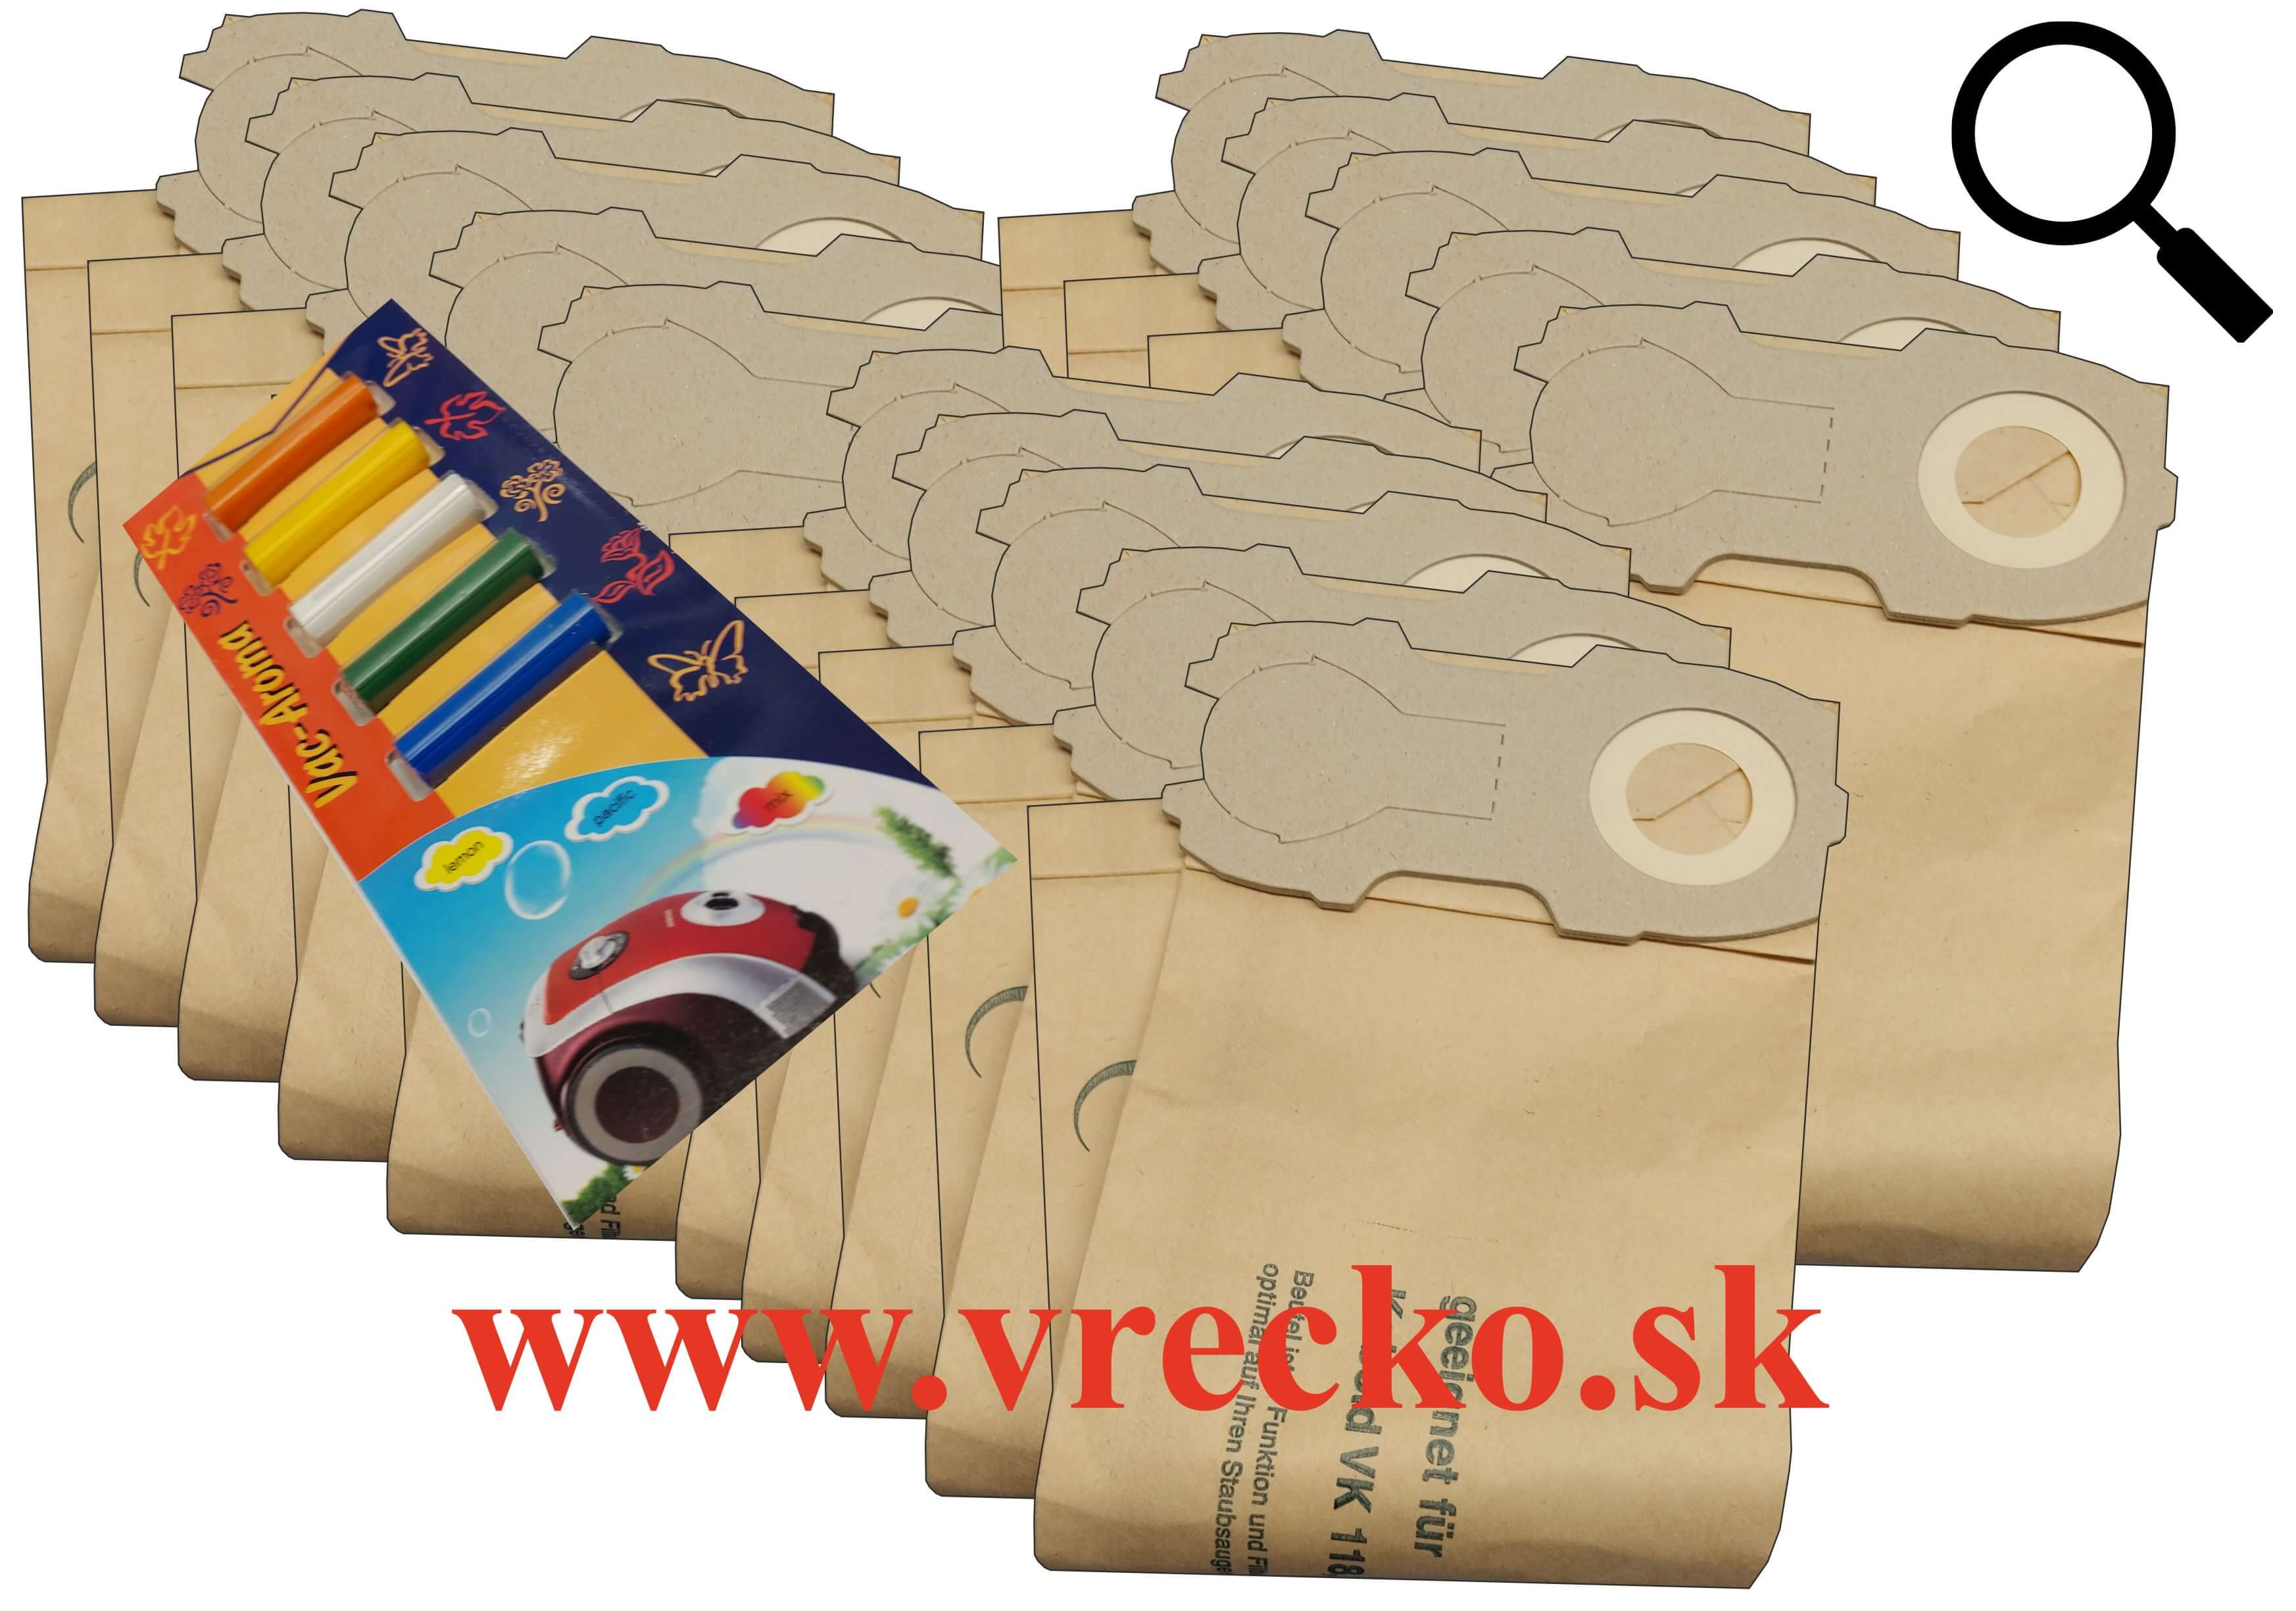 Vorwerk Folleto VK 118-122 - XL zvýhodnené balenie papierových vreciek do vysávača + 5 ks vôní do vysávačov MIX ZDARMA za cenu 3,99 (celkovo vreciek 15 ks)